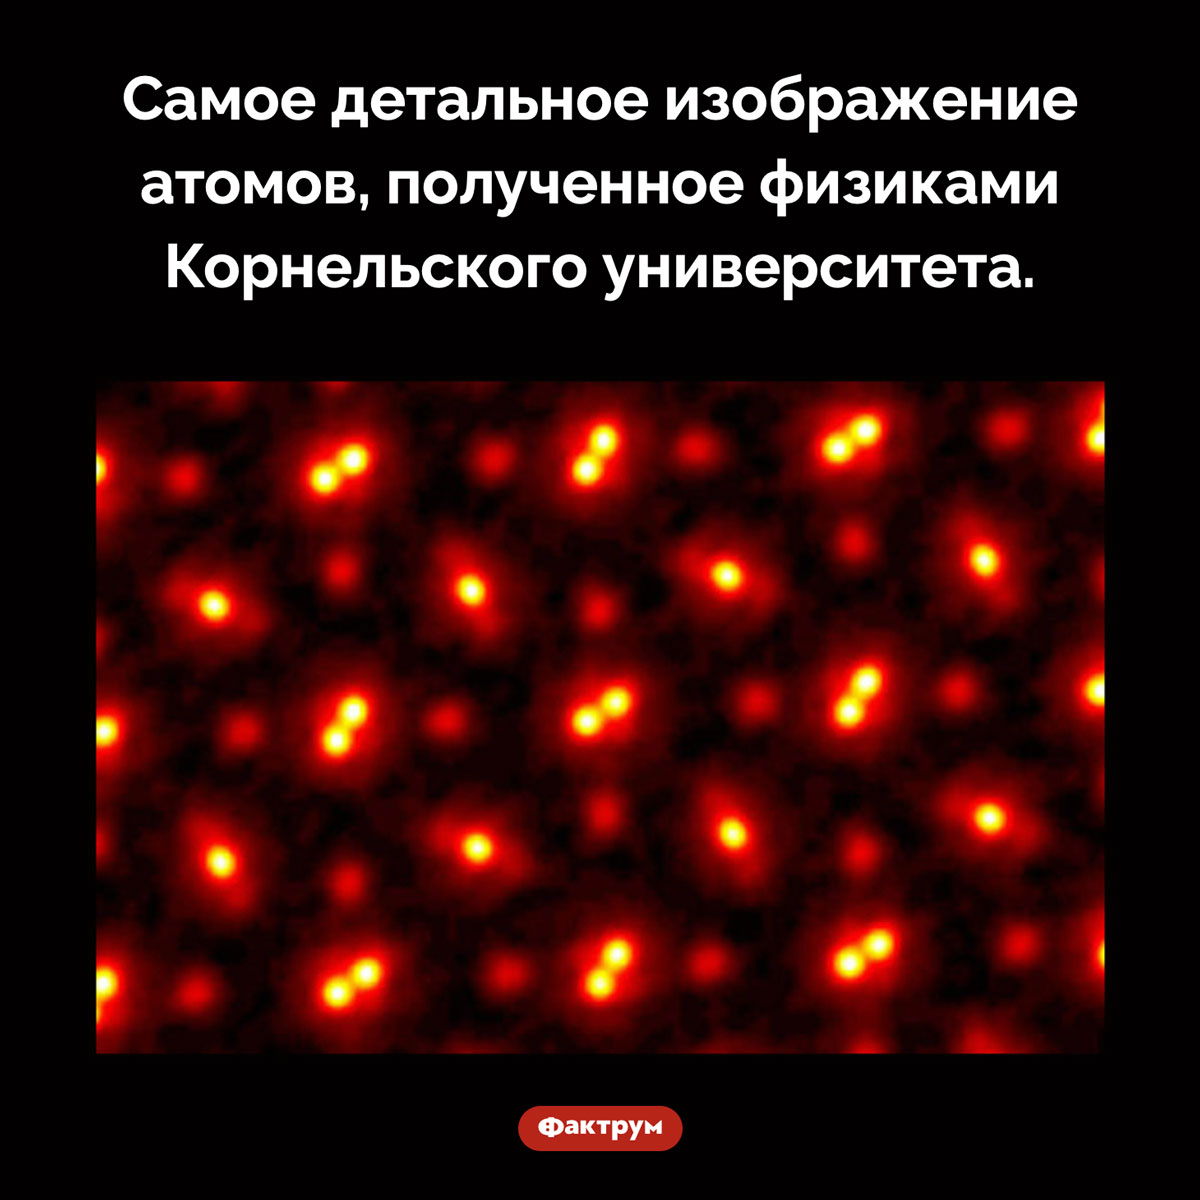 Фотография атомов. Самое детальное изображение атомов, полученное физиками Корнельского университета.